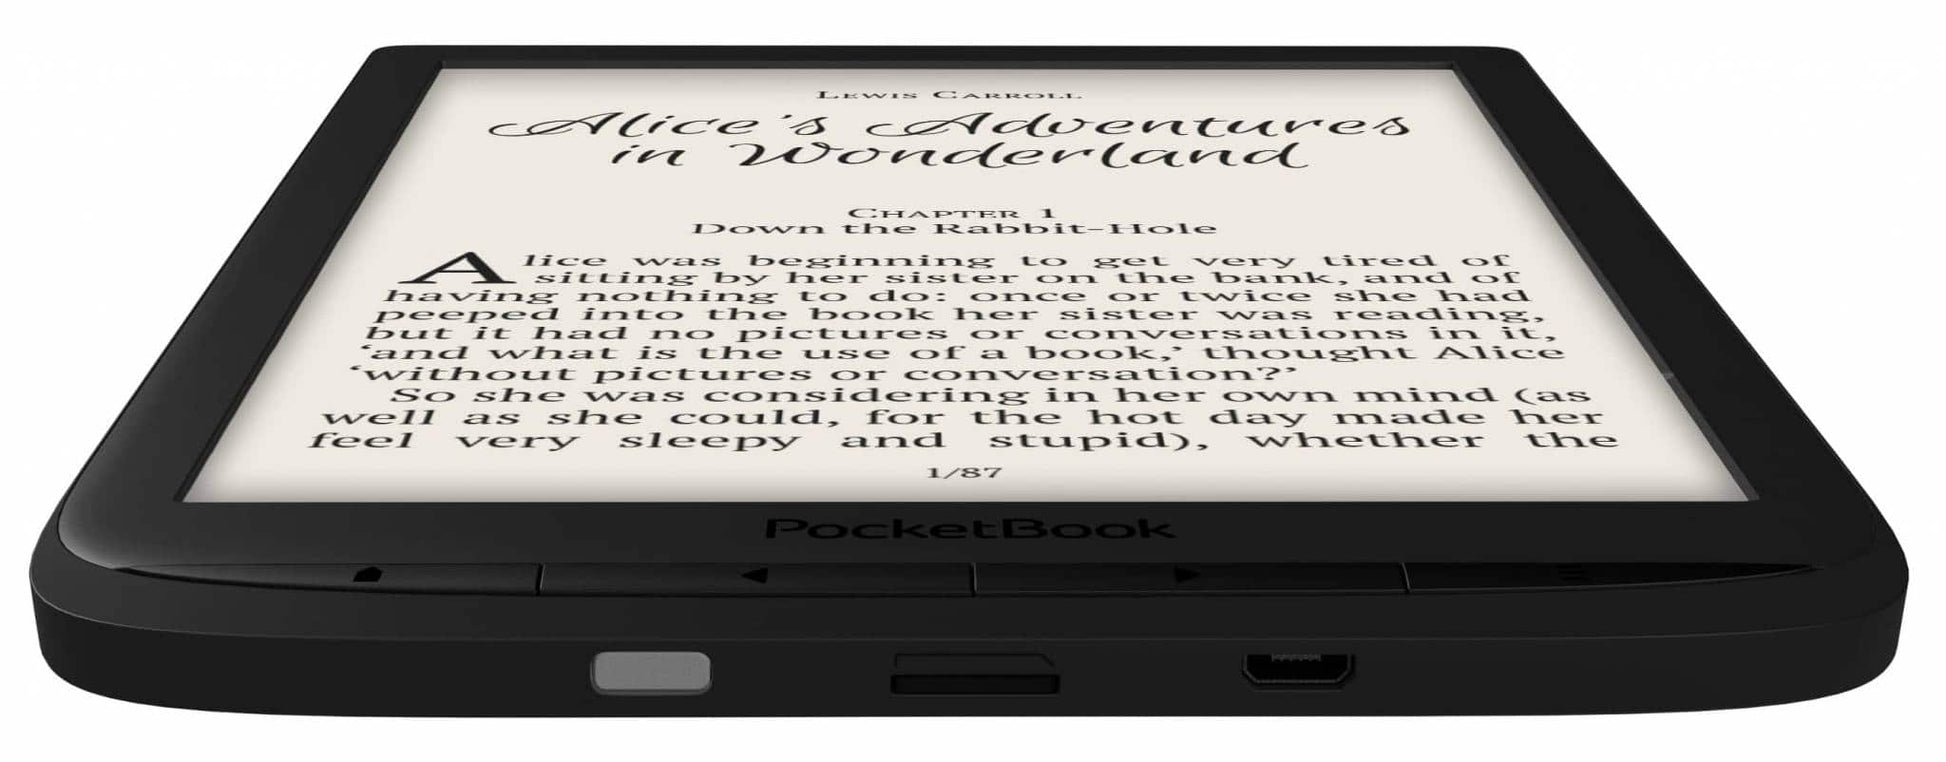 Pocketbook Inkpad 3 - 7.8 inch e-reader - 6